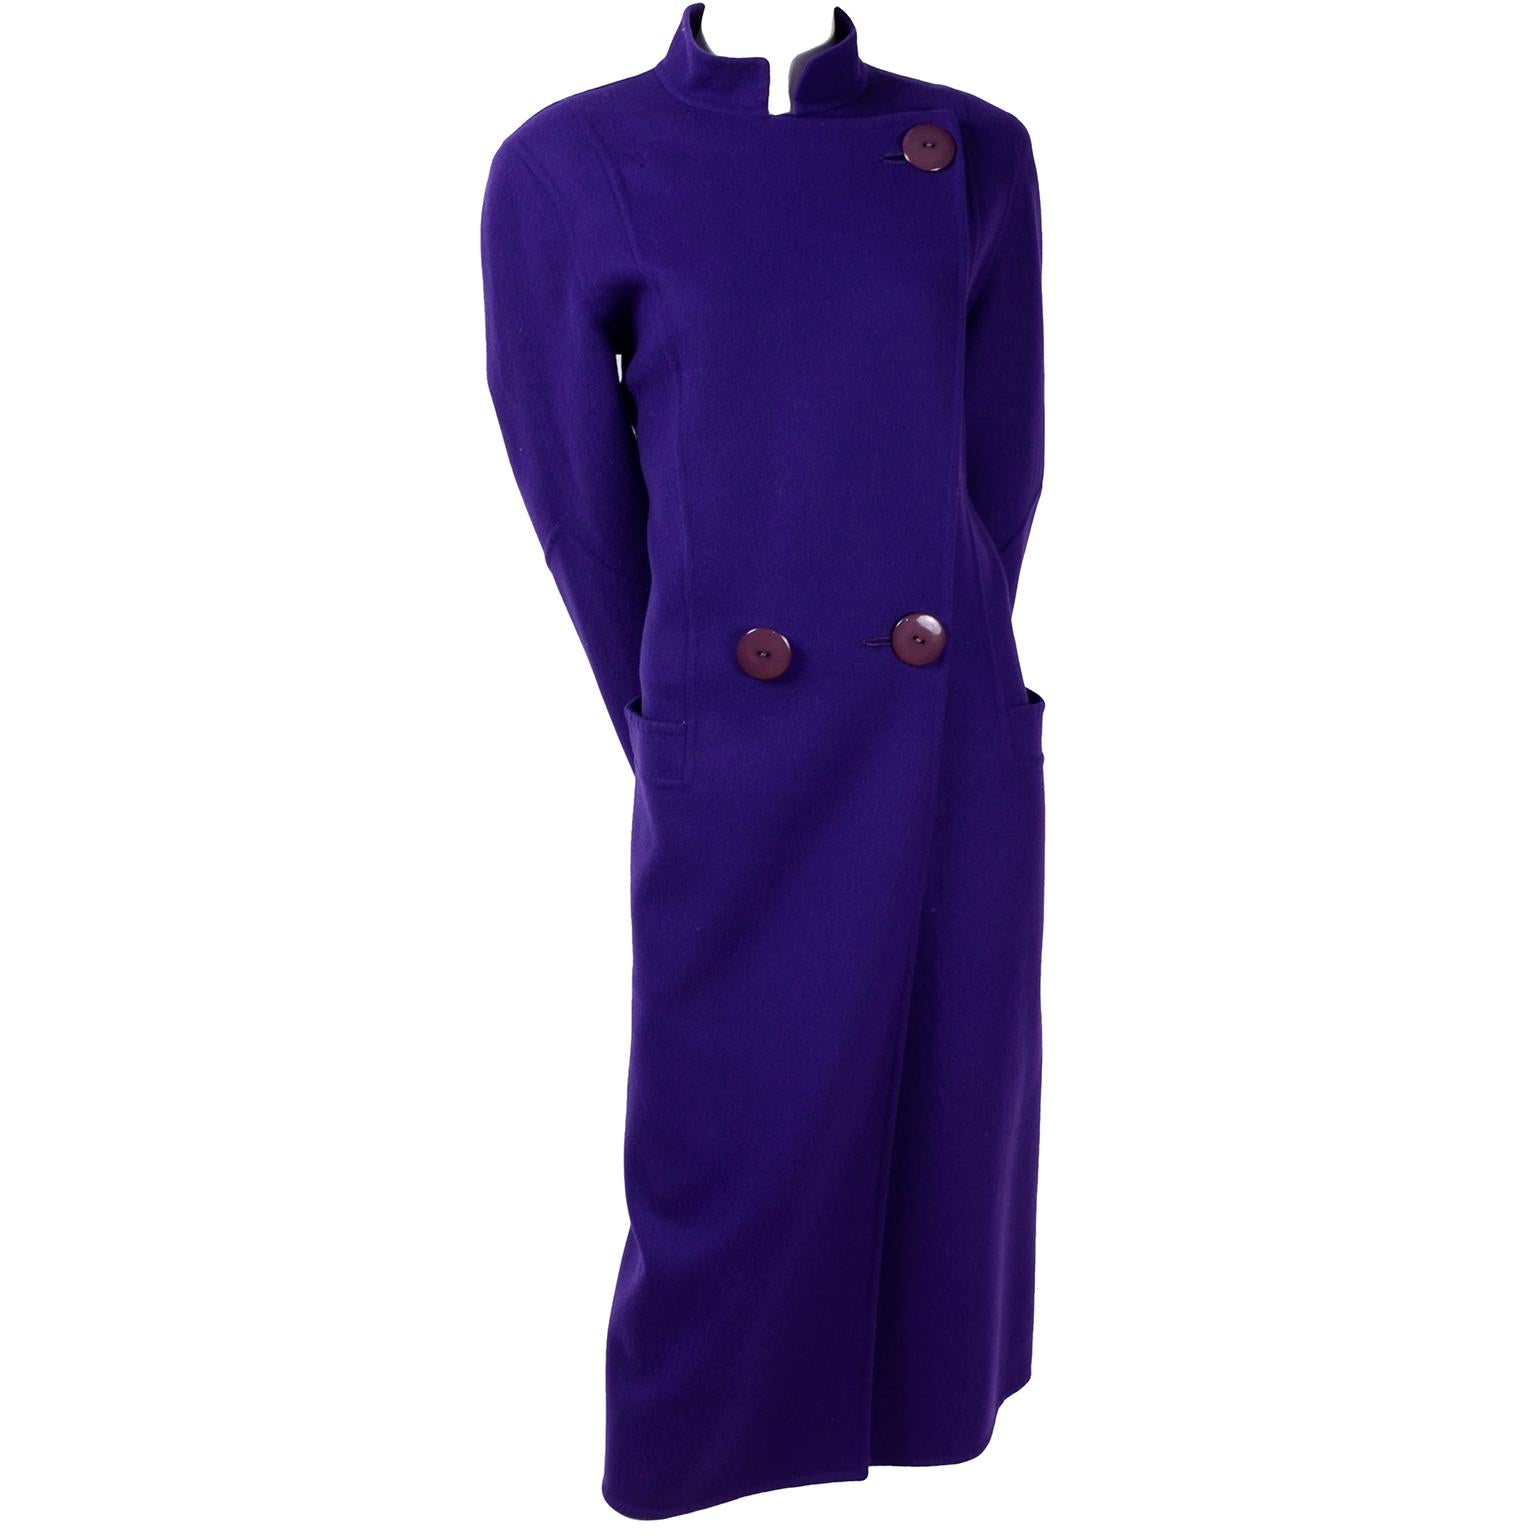 C'est un superbe manteau vintage en laine violette de Salvatore Ferragamo. Le manteau peut être porté avec des revers ou avec un col mandarin. Il a des poches à rabat et se ferme avec deux gros boutons. Ce magnifique manteau de la fin des années